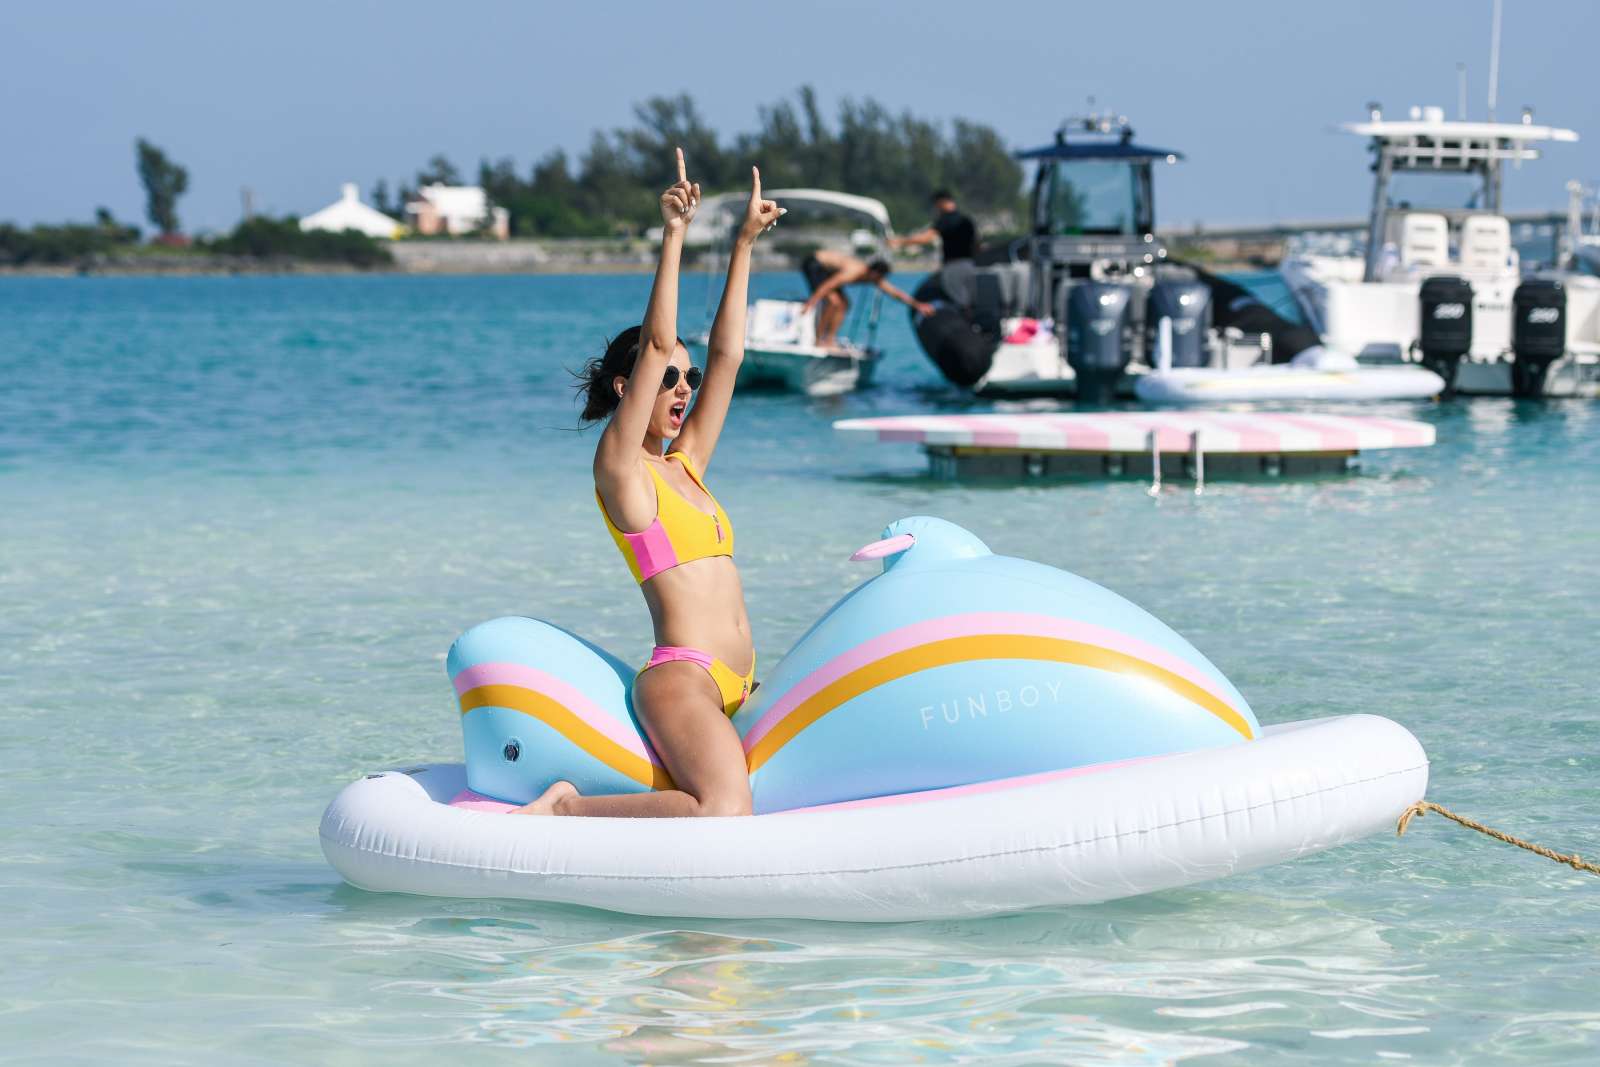 Victoria Justice in Bikini â€“ Revolve Summer Event in Bermuda